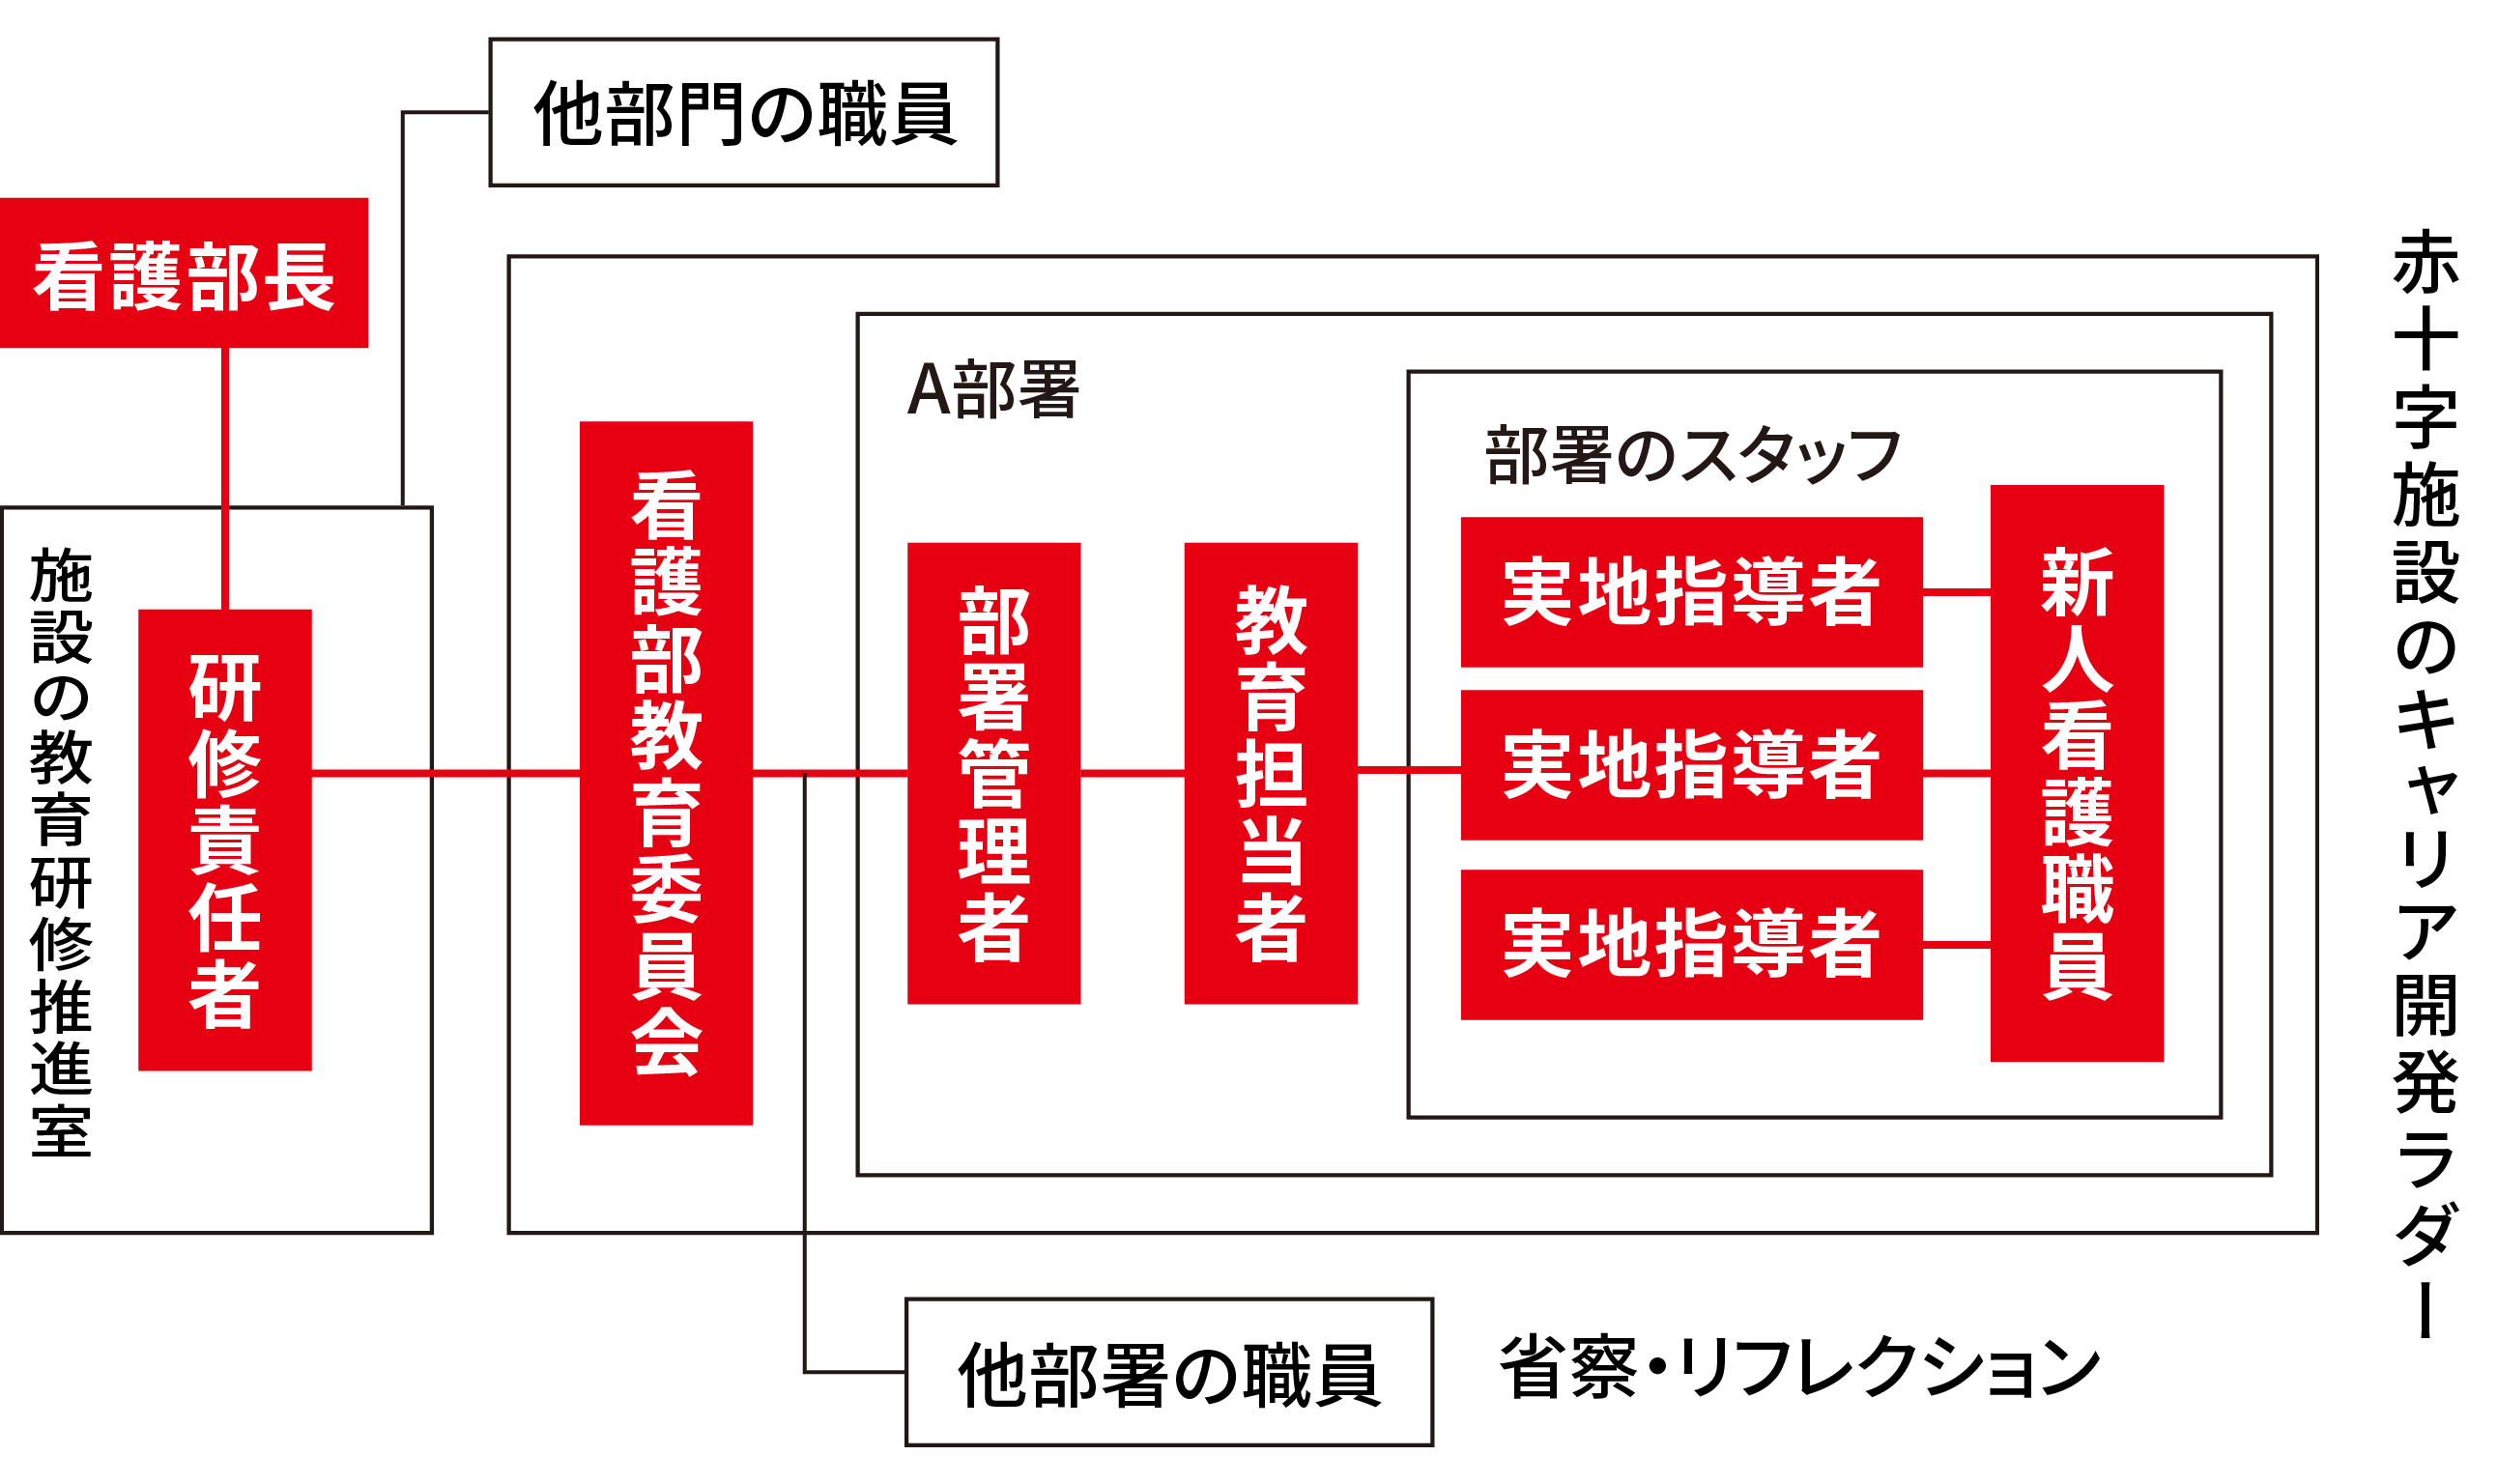 日本赤十字病院の新人看護職員教育研修システム